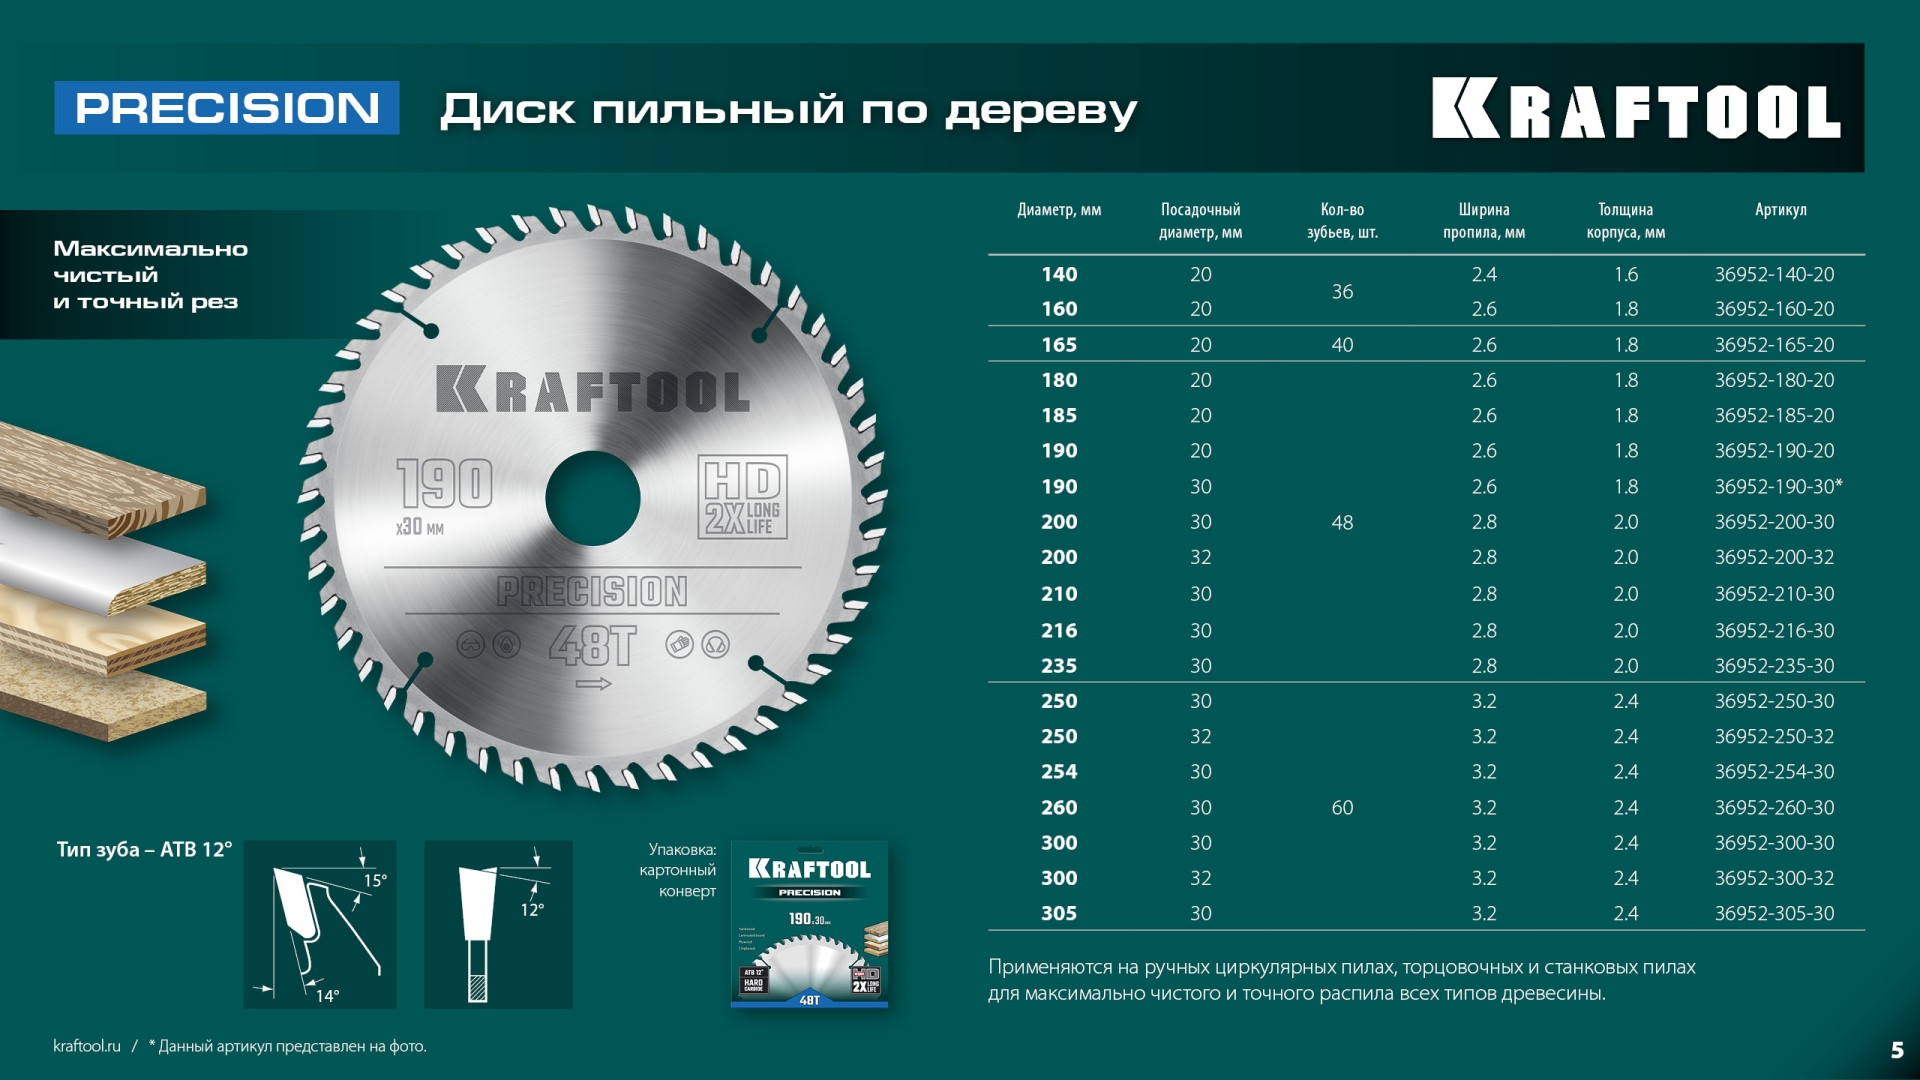 KRAFTOOL Precision, 210 х 30 мм, 48Т, пильный диск по дереву (36952-210-30)